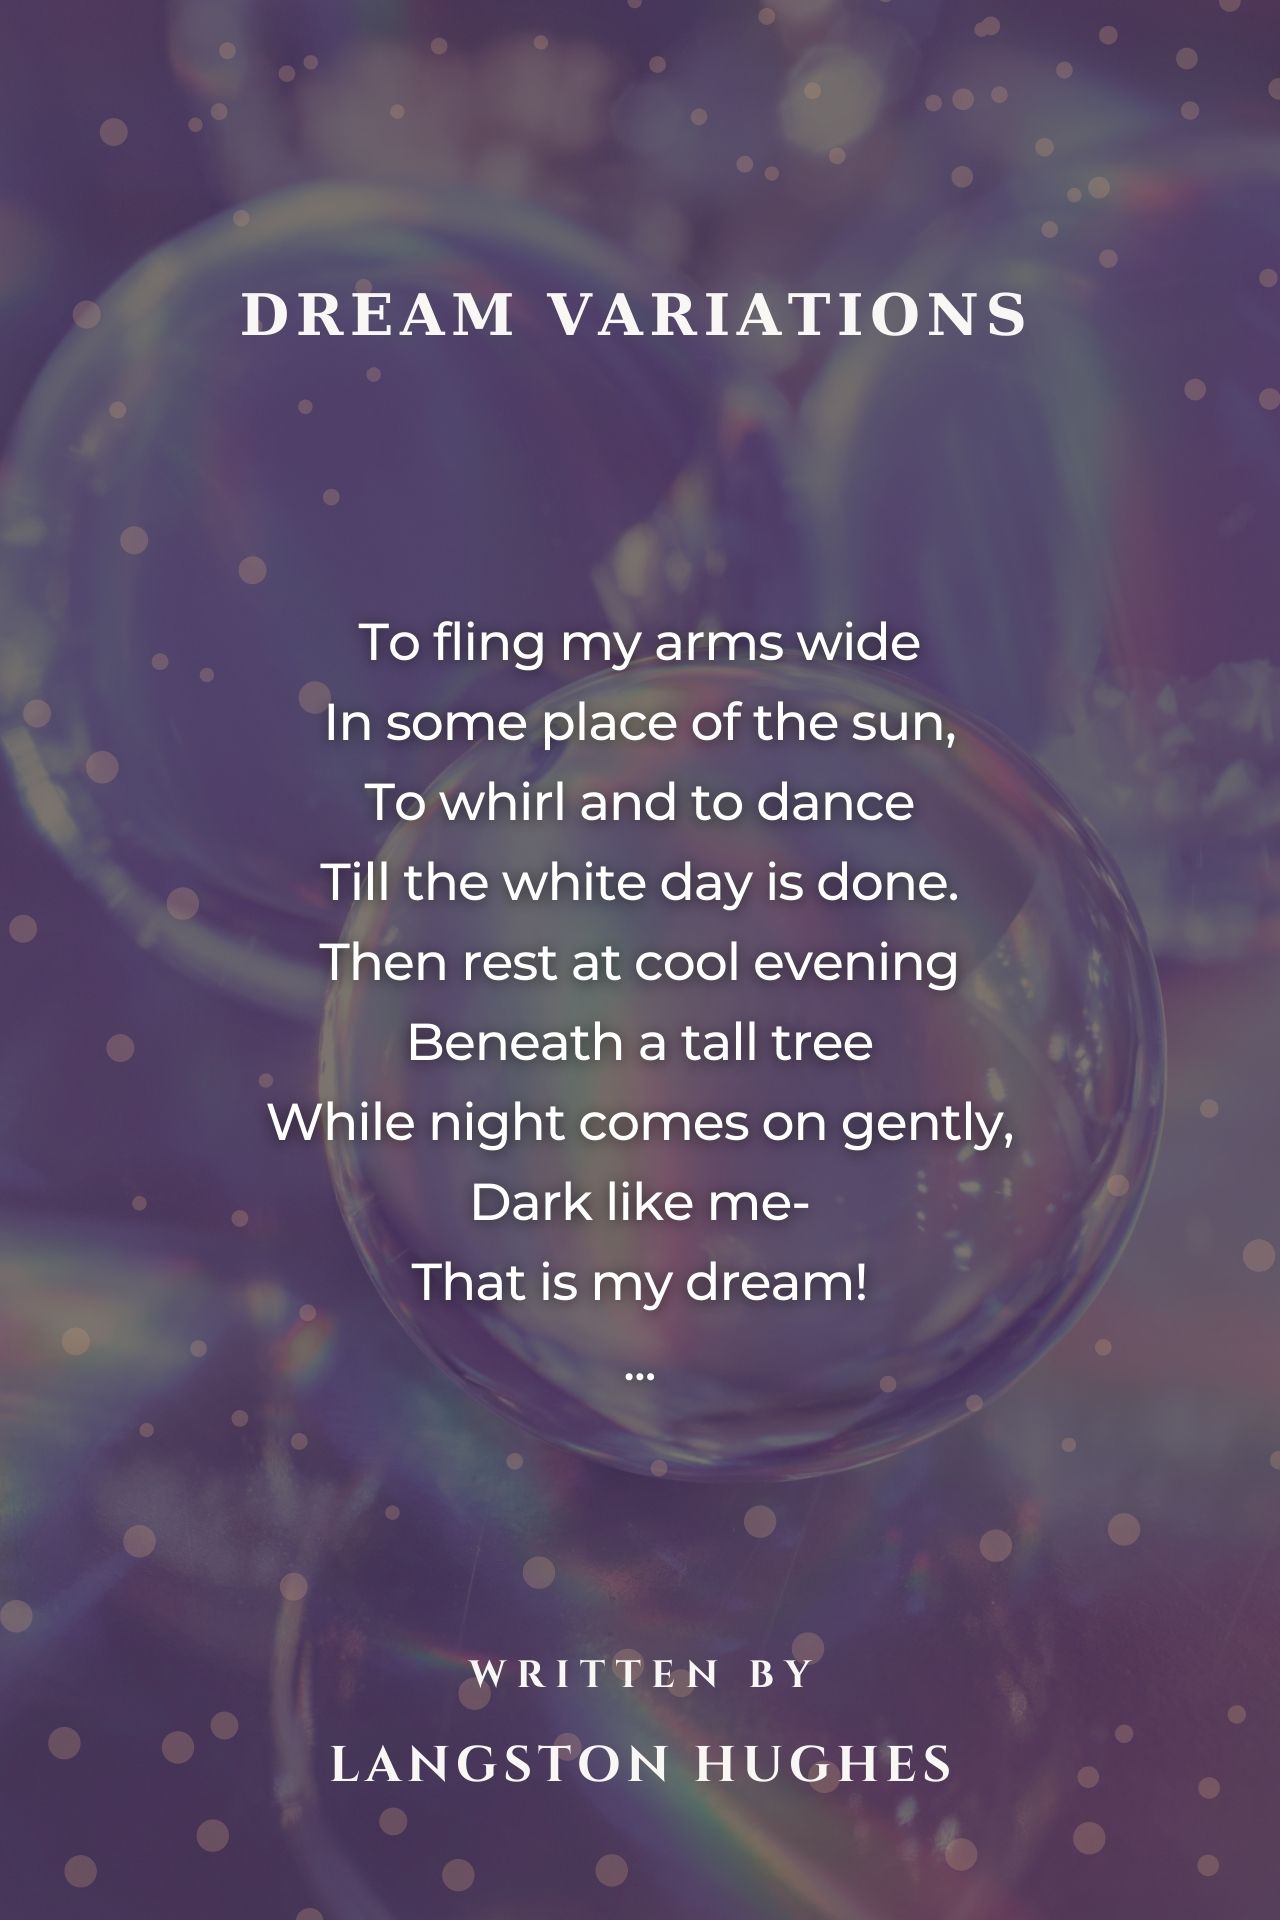 Dream Variations - Dream Variations Poem by Langston Hughes